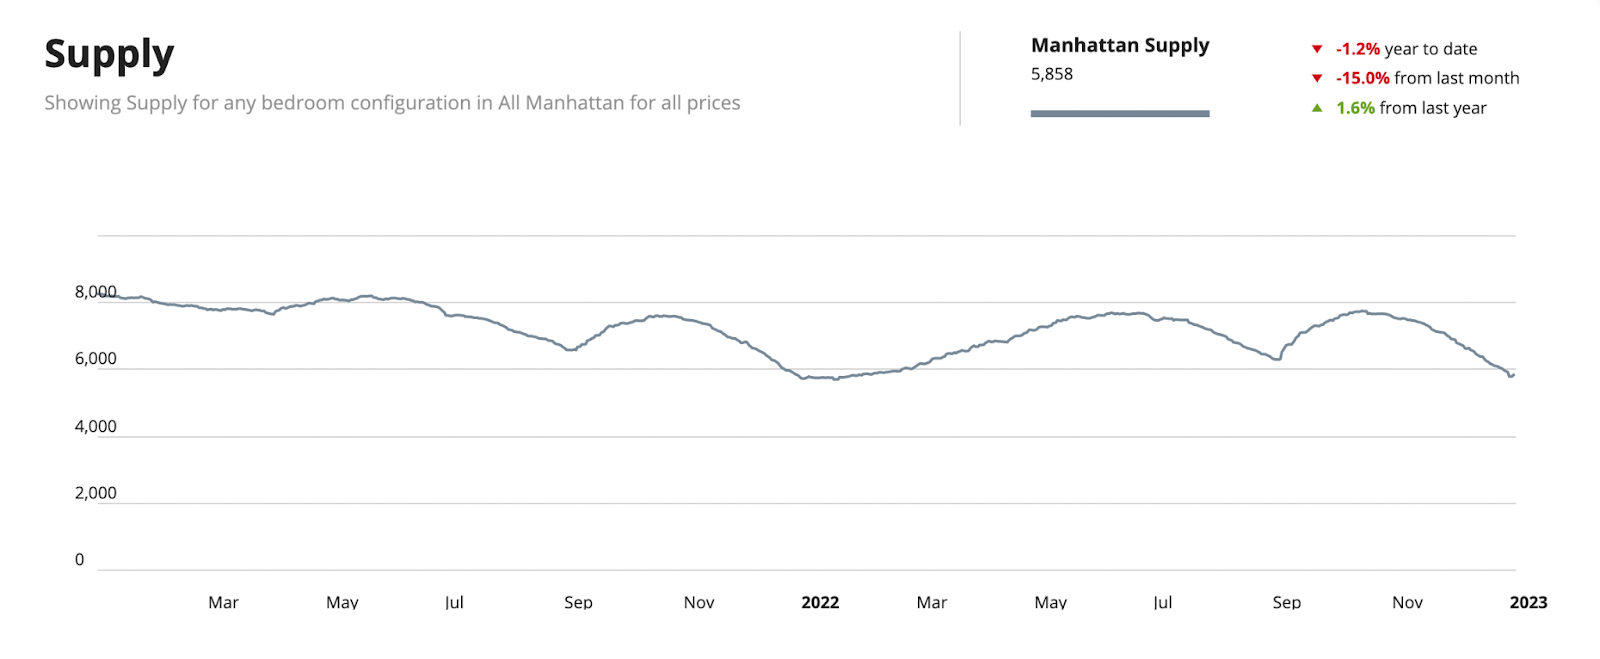 Mercato immobiliare di Manhattan Offerta di inventario 